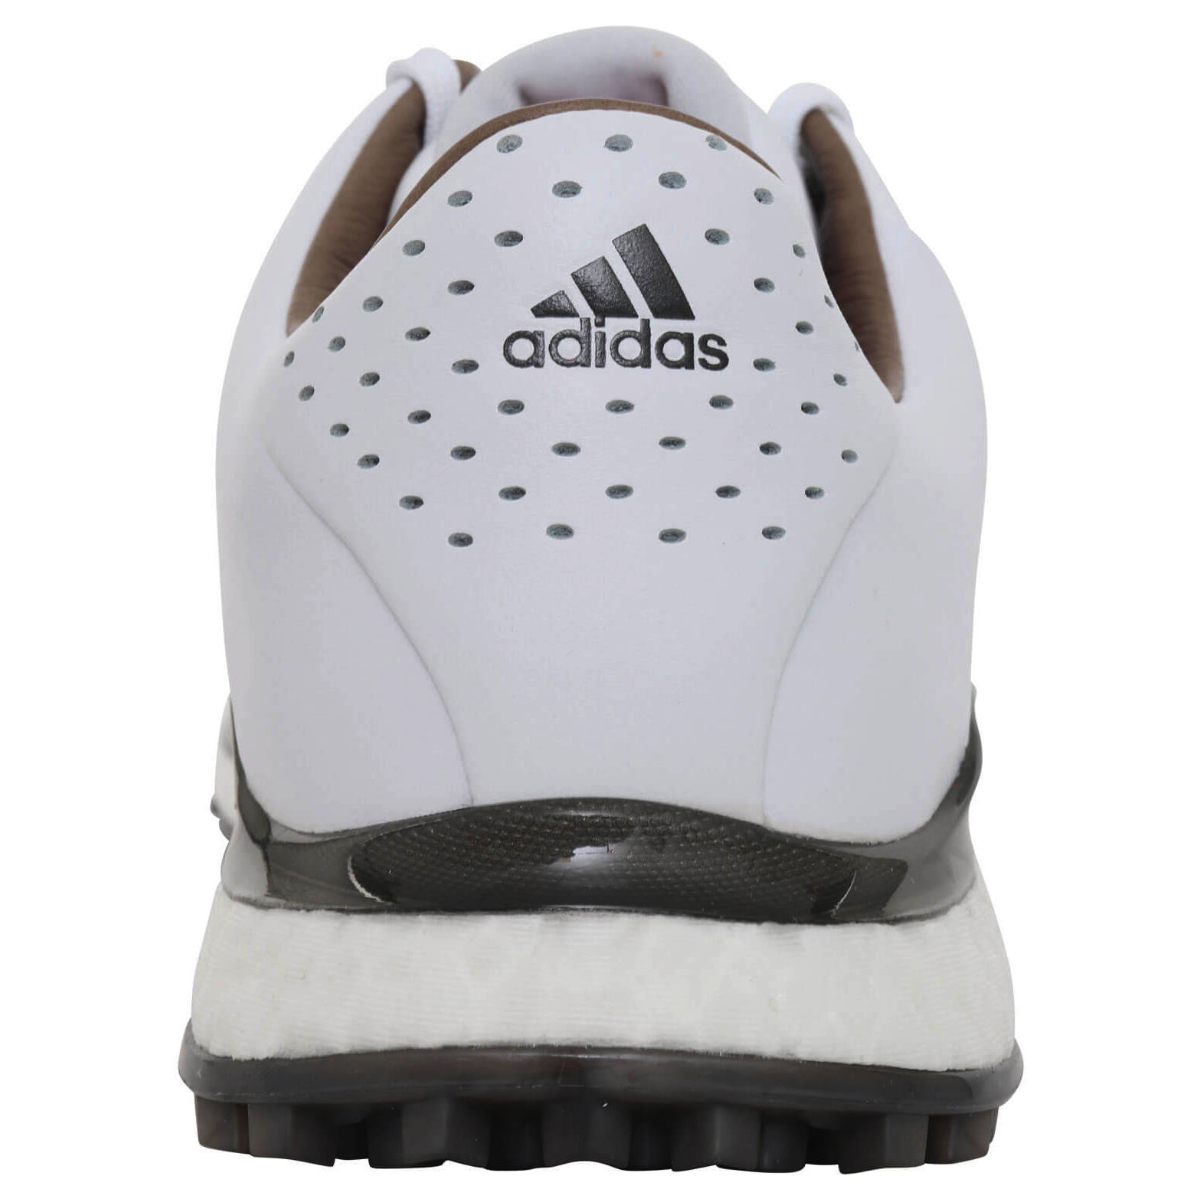 Adidas Tour360 XT-SL 2 White/Black/Grey Herren